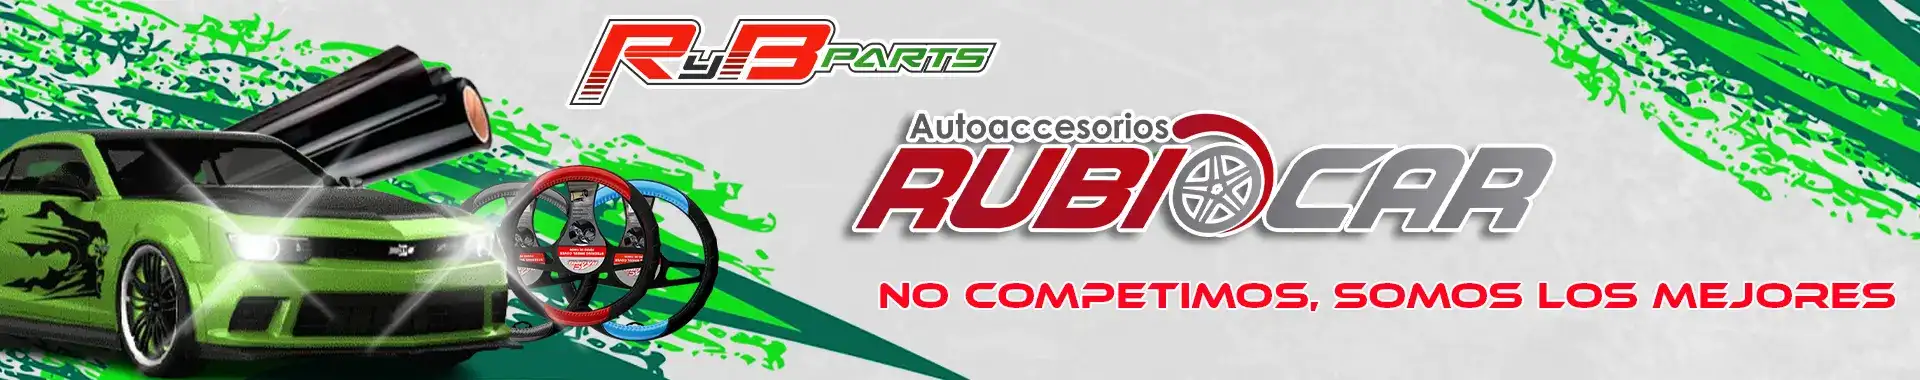 Imagen 1 del perfil de Rubiocar Autoaccesorios